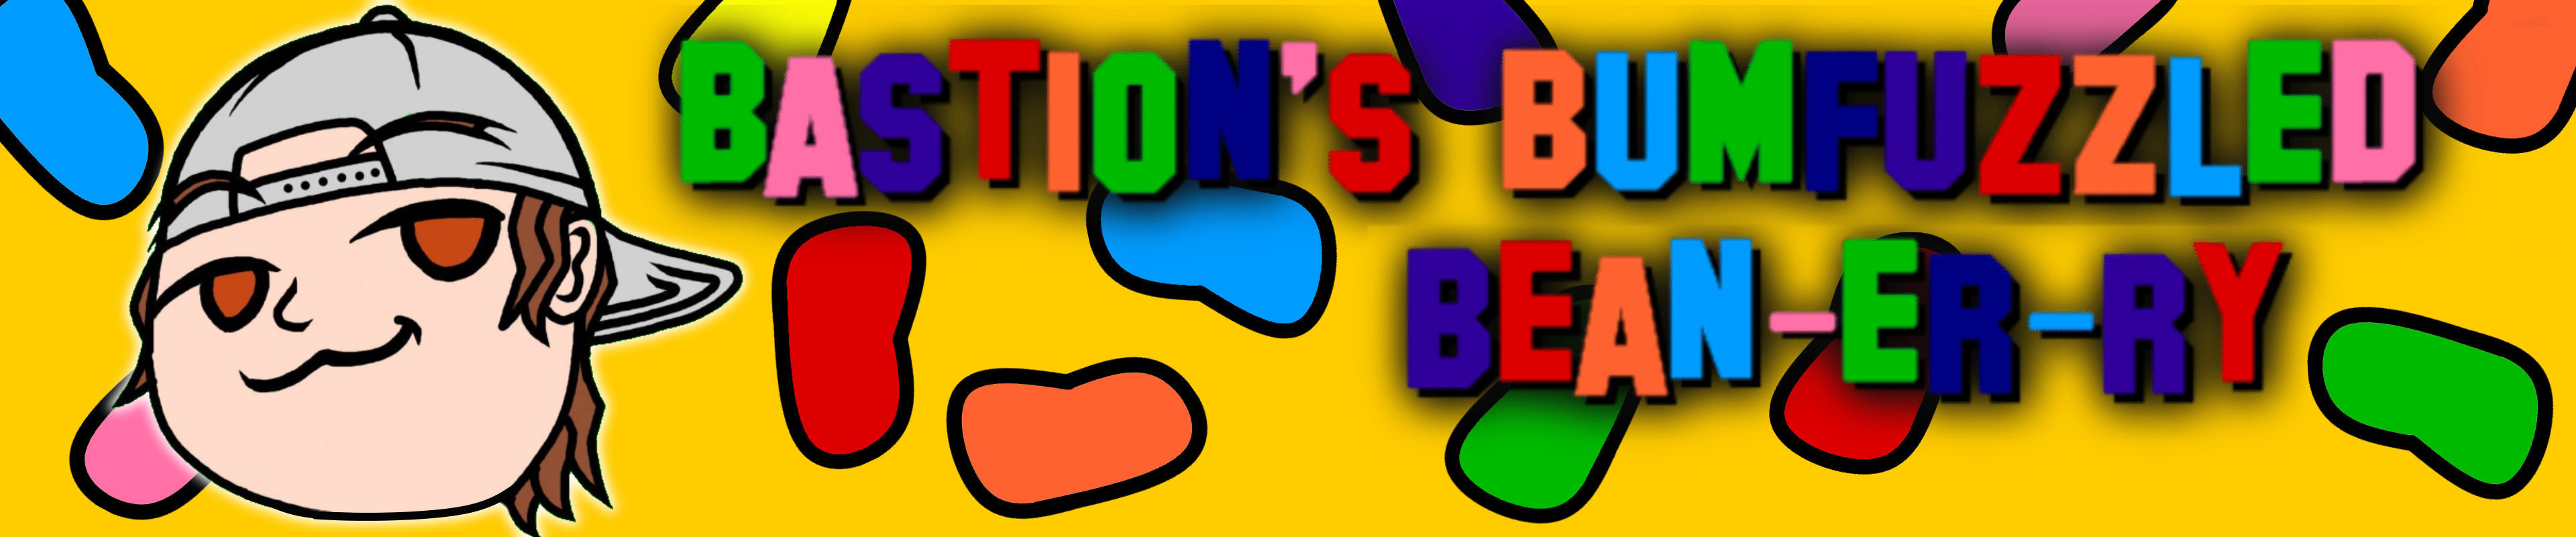 Bastion's Bumfuzzled Bean-er-ry